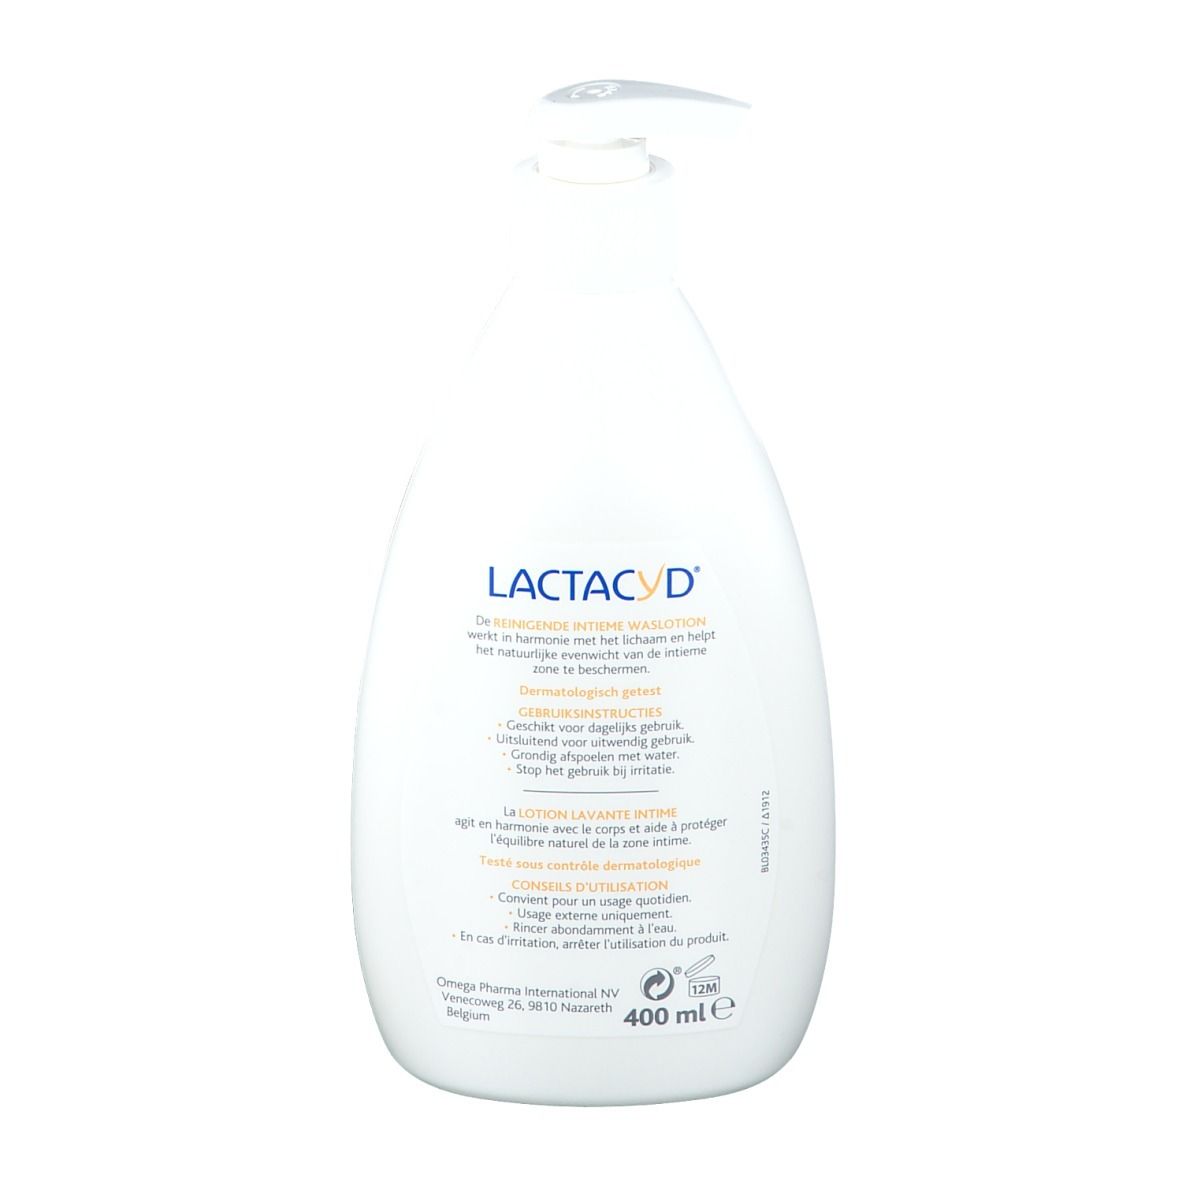 Lactacyd lotion lavante intime 400 ml à petit prix